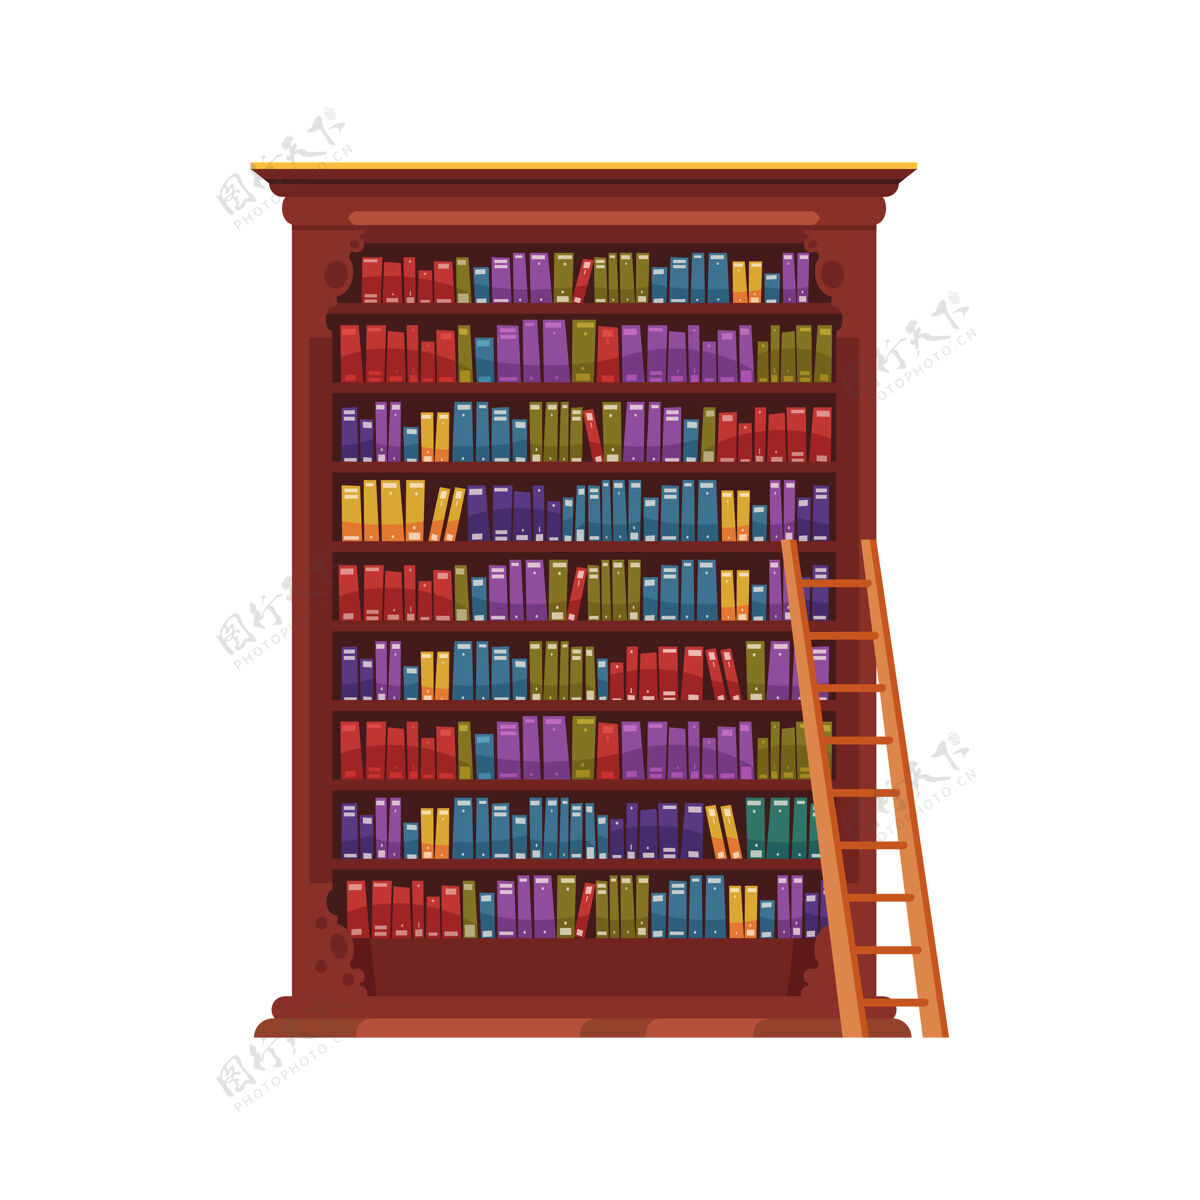 图书管理员旧图书馆内部组成与孤立的形象古董橱柜与丰富多彩的书籍教育古董室内